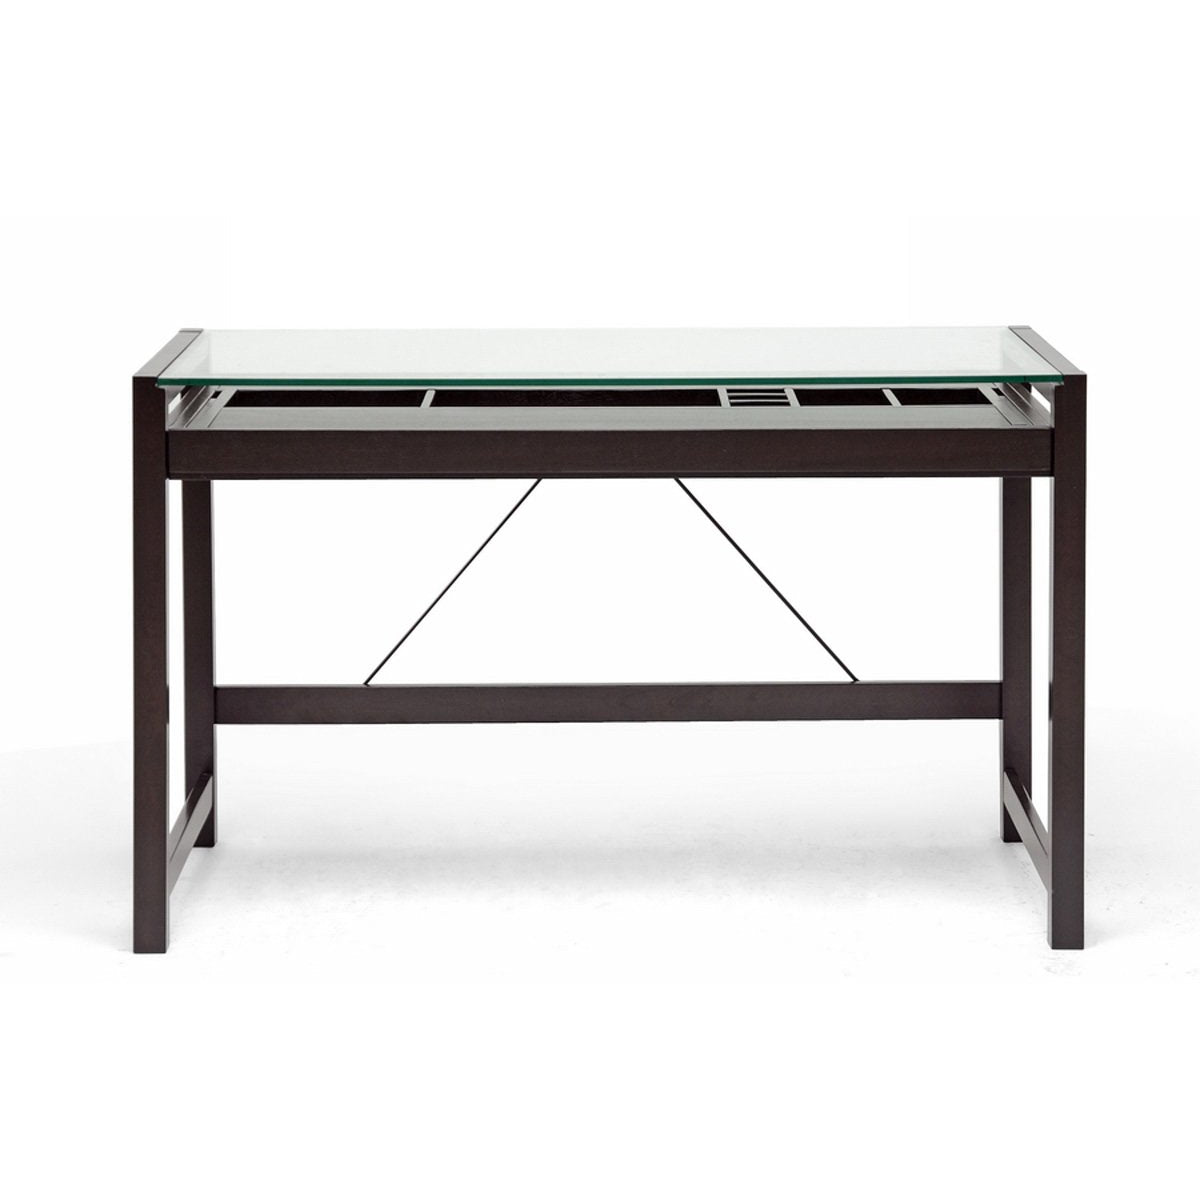 Baxton Studio Idabel Dark Brown Wood Modern Desk with Glass Top Baxton Studio-Desks-Minimal And Modern - 2